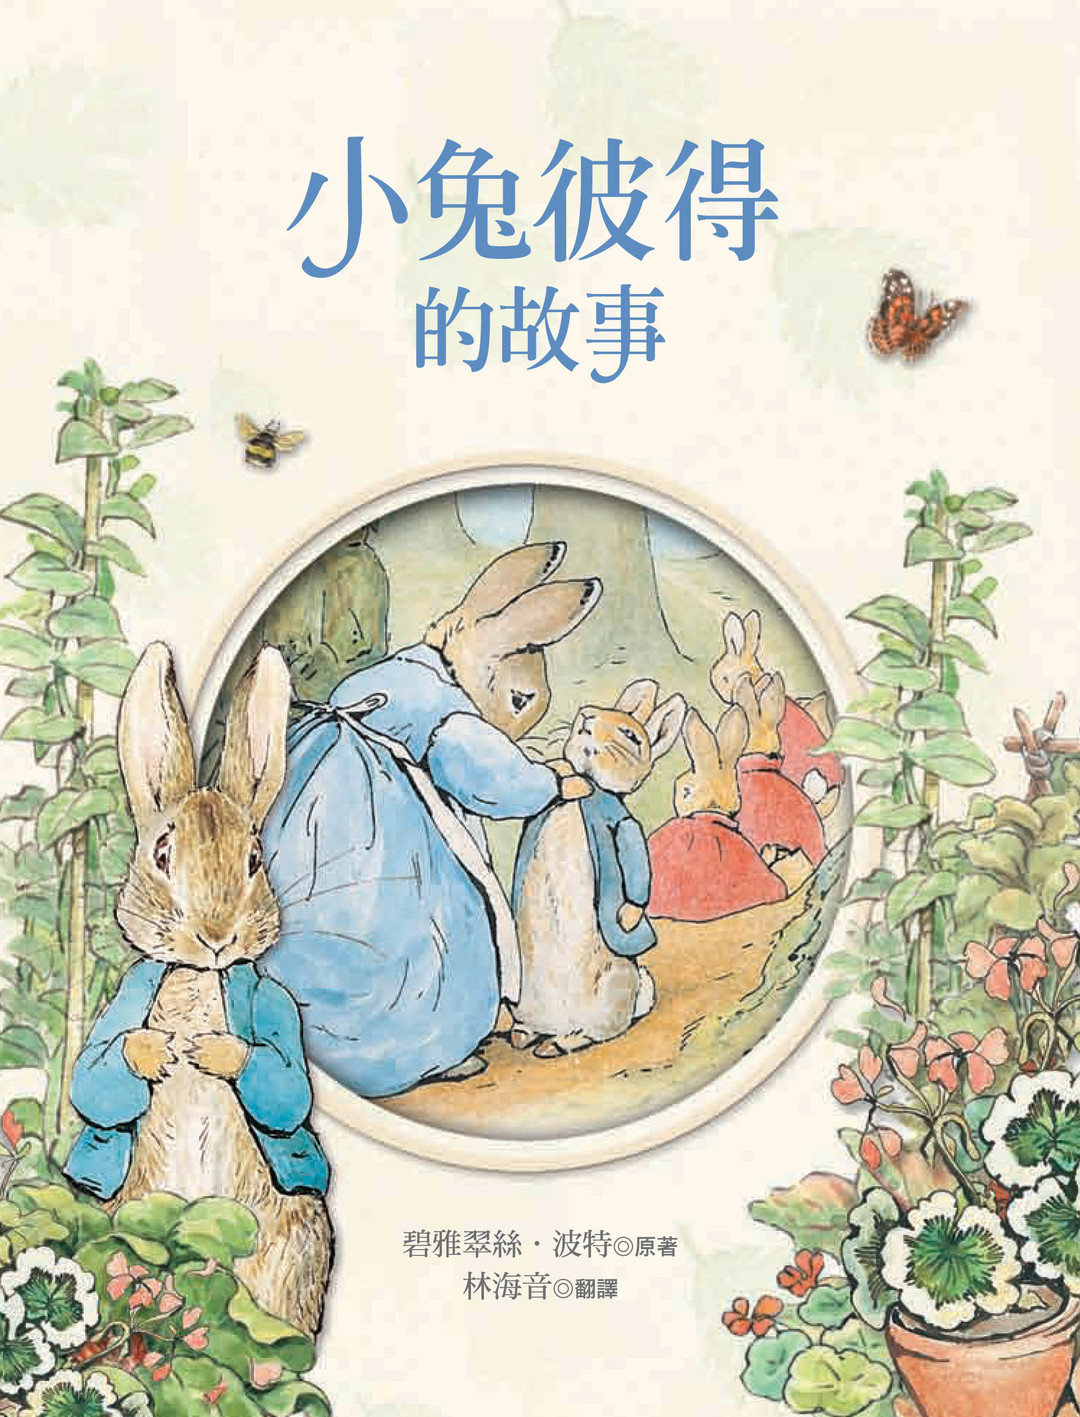 繪本小書櫃 全世界最出名的兔子 小兔彼得的故事 紅了100 年 Citiorange 公民報橘